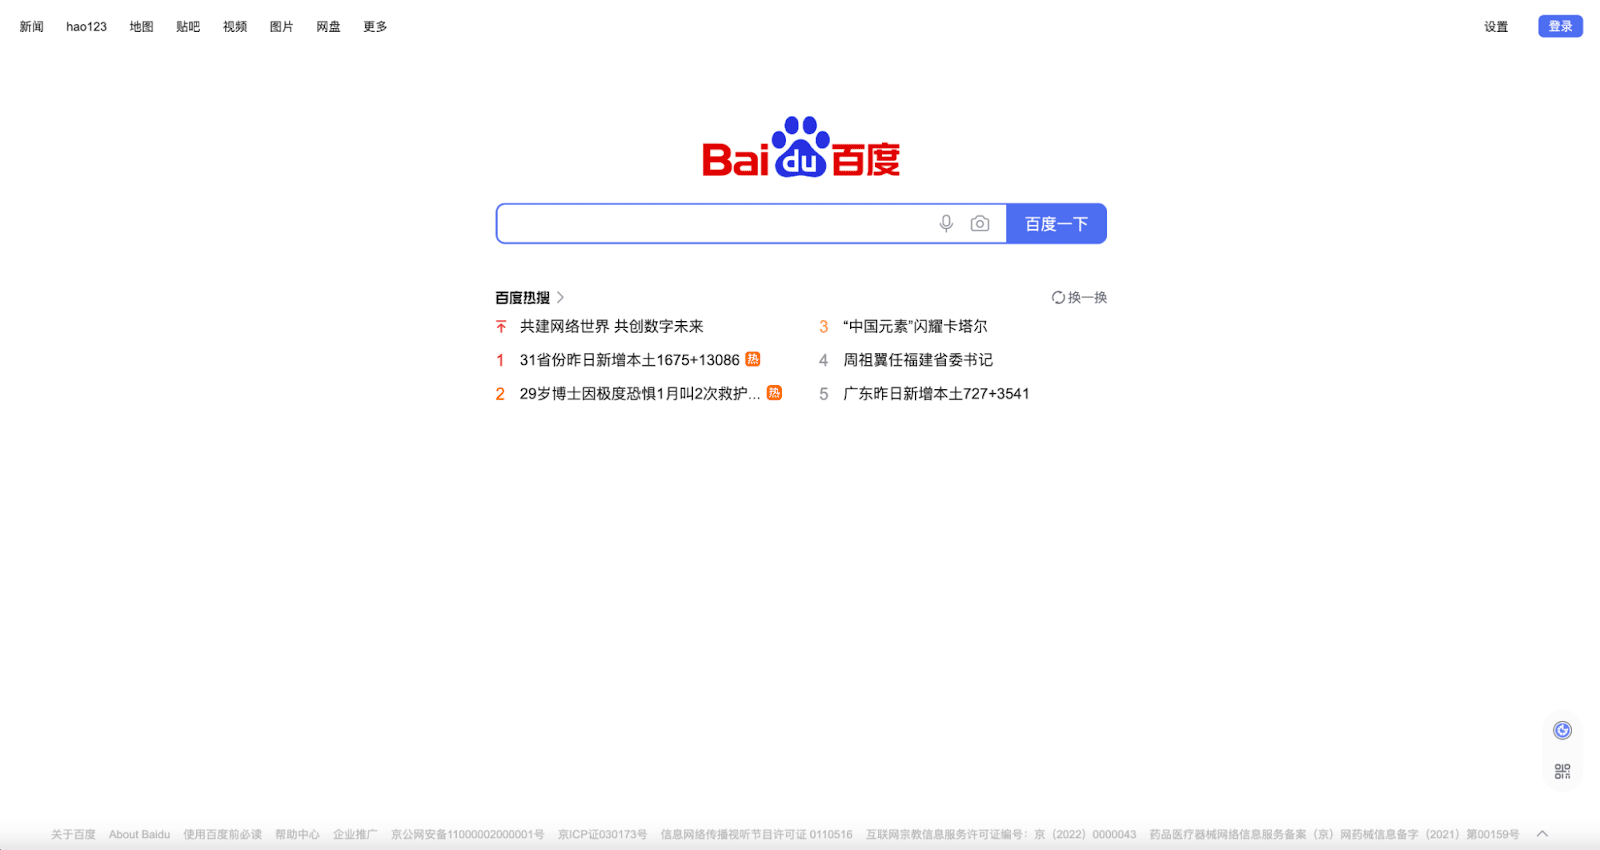 中国の検索エンジンBaiduのクローラー「Baidu Spider」